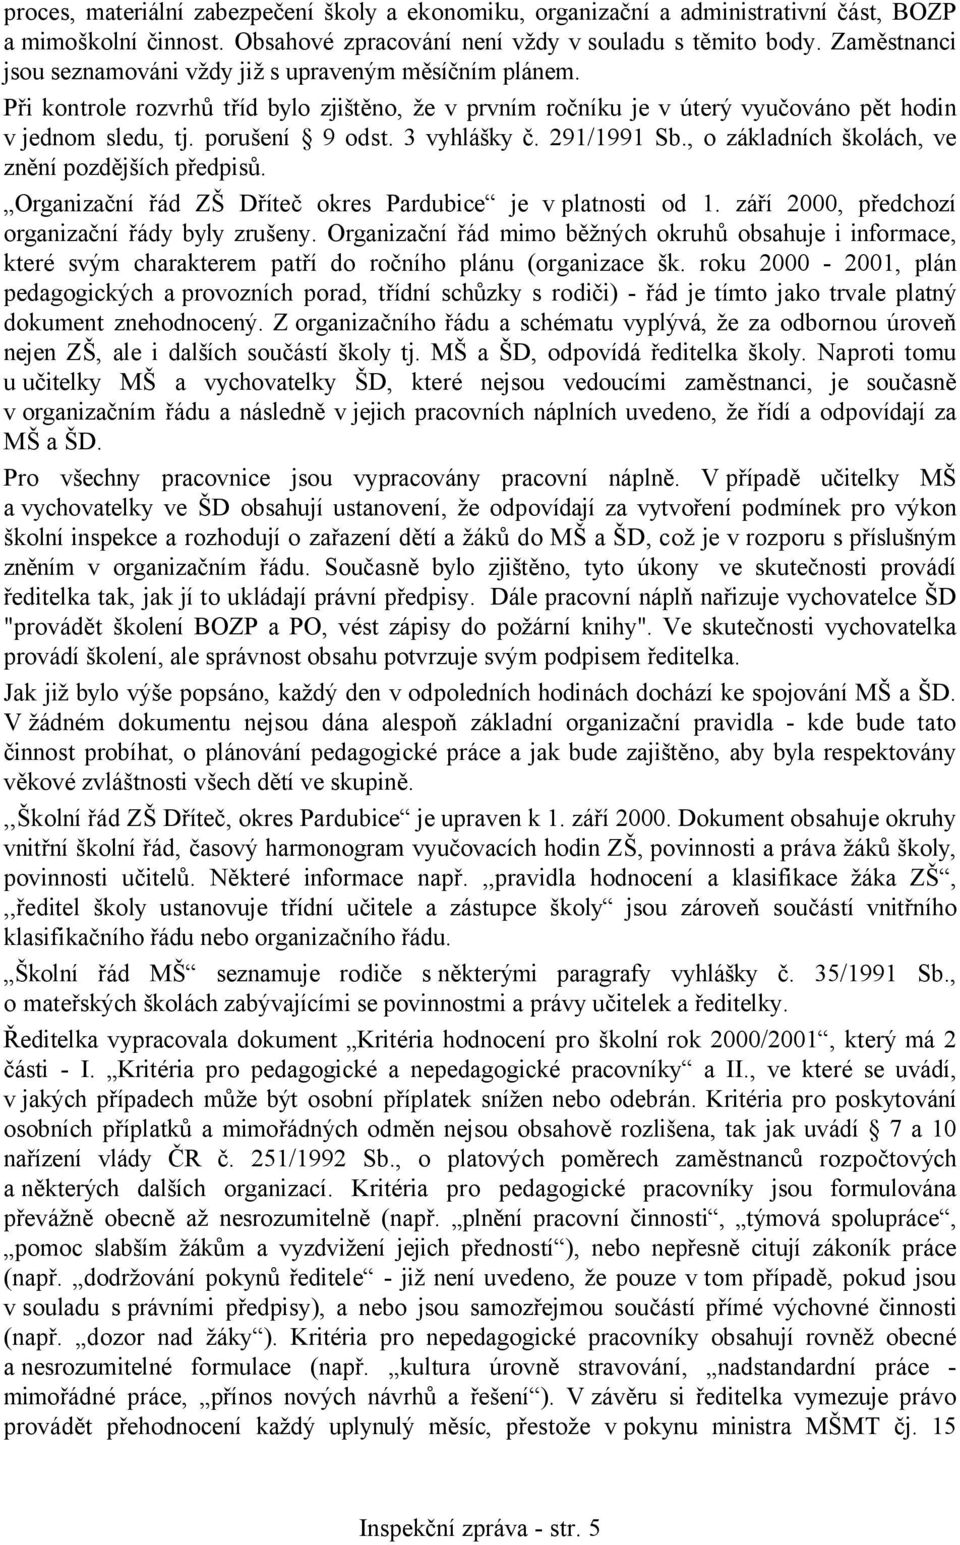 3 vyhlášky č. 291/1991 Sb., o základních školách, ve znění pozdějších předpisů. Organizační řád ZŠ Dříteč okres Pardubice je v platnosti od 1. září 2000, předchozí organizační řády byly zrušeny.